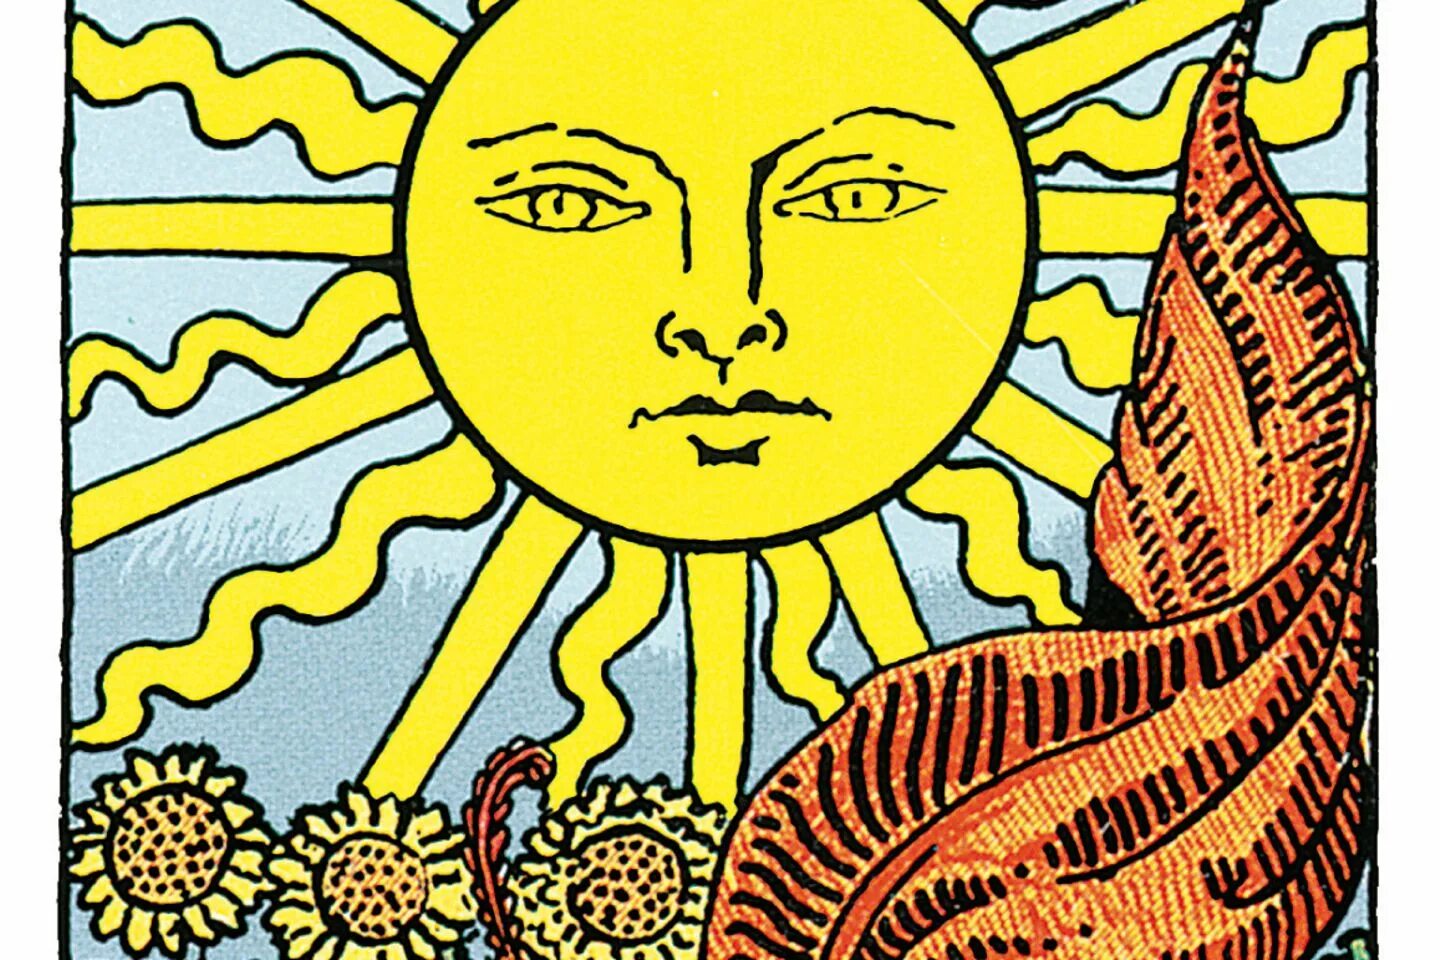 Аркан солнце Таро Уэйта. Солнце Райдер Уэйт. 19 Аркан Таро. Карта солнце Таро Уэйта. Карта солнца и луны